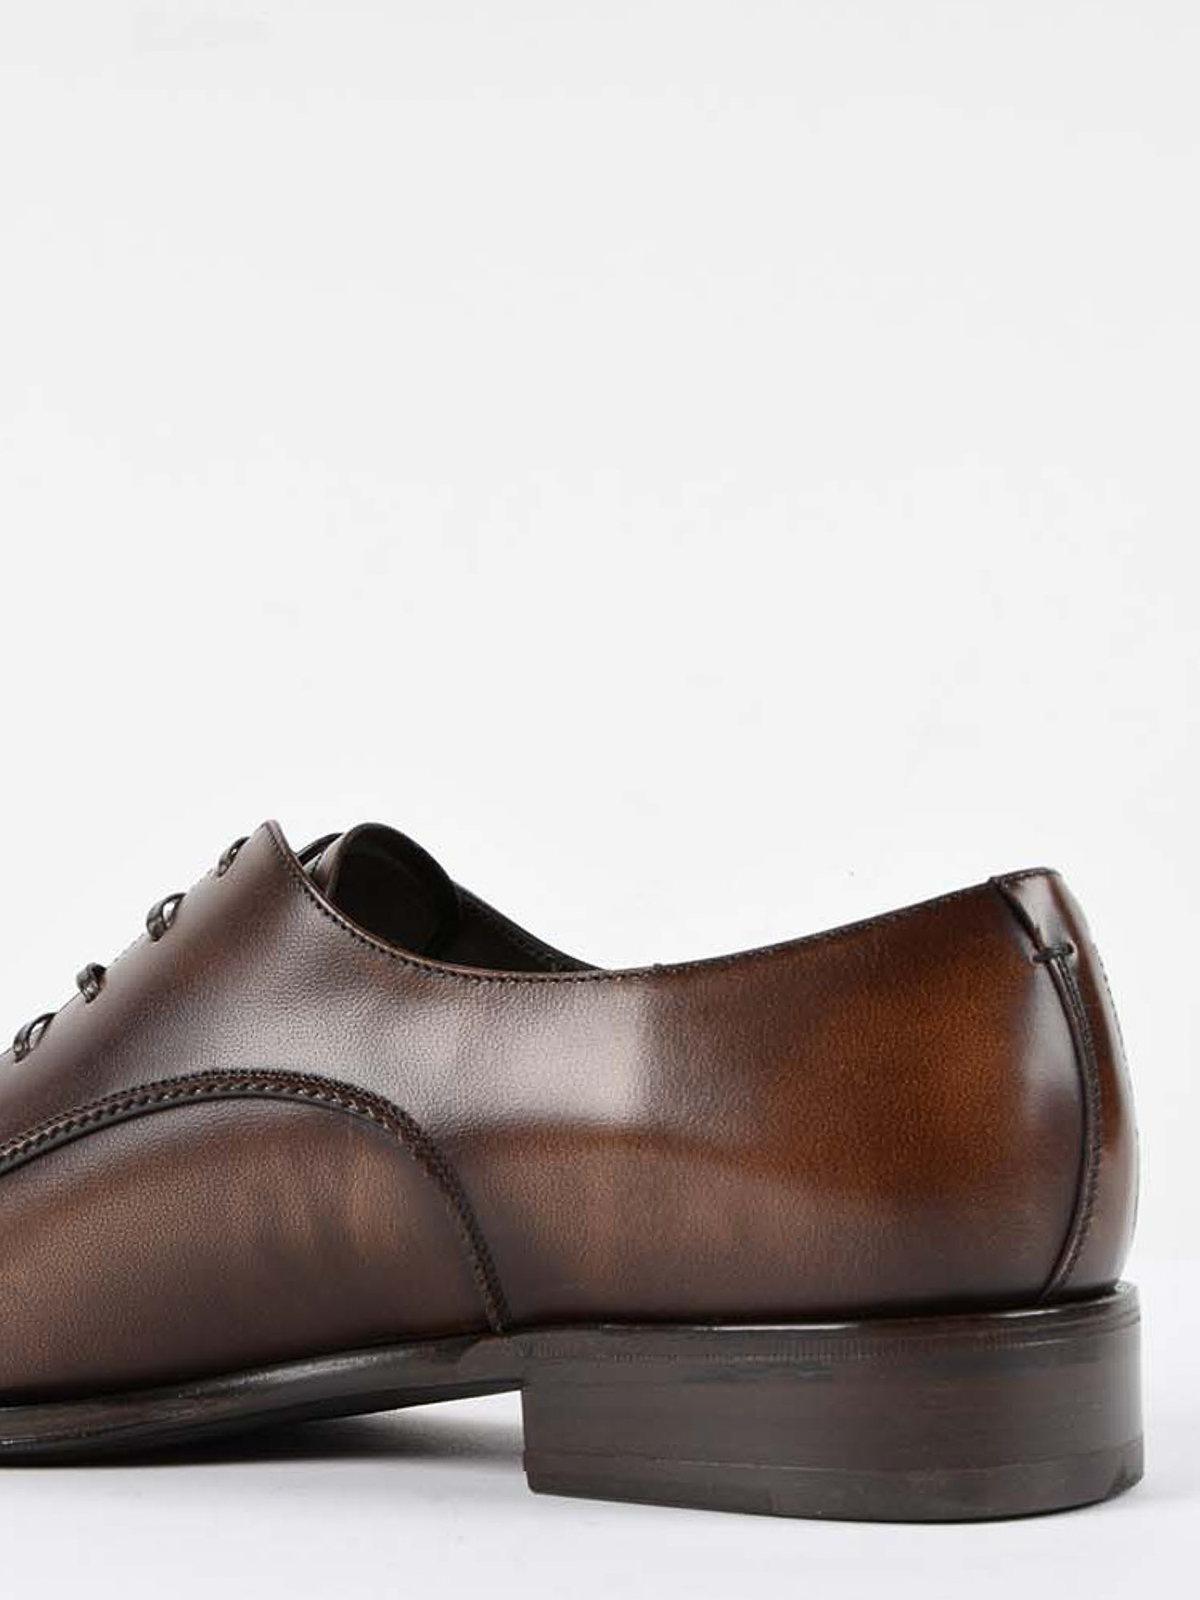 Classic shoes Ferragamo - Daniel shoes - 02A475001670391MADERA